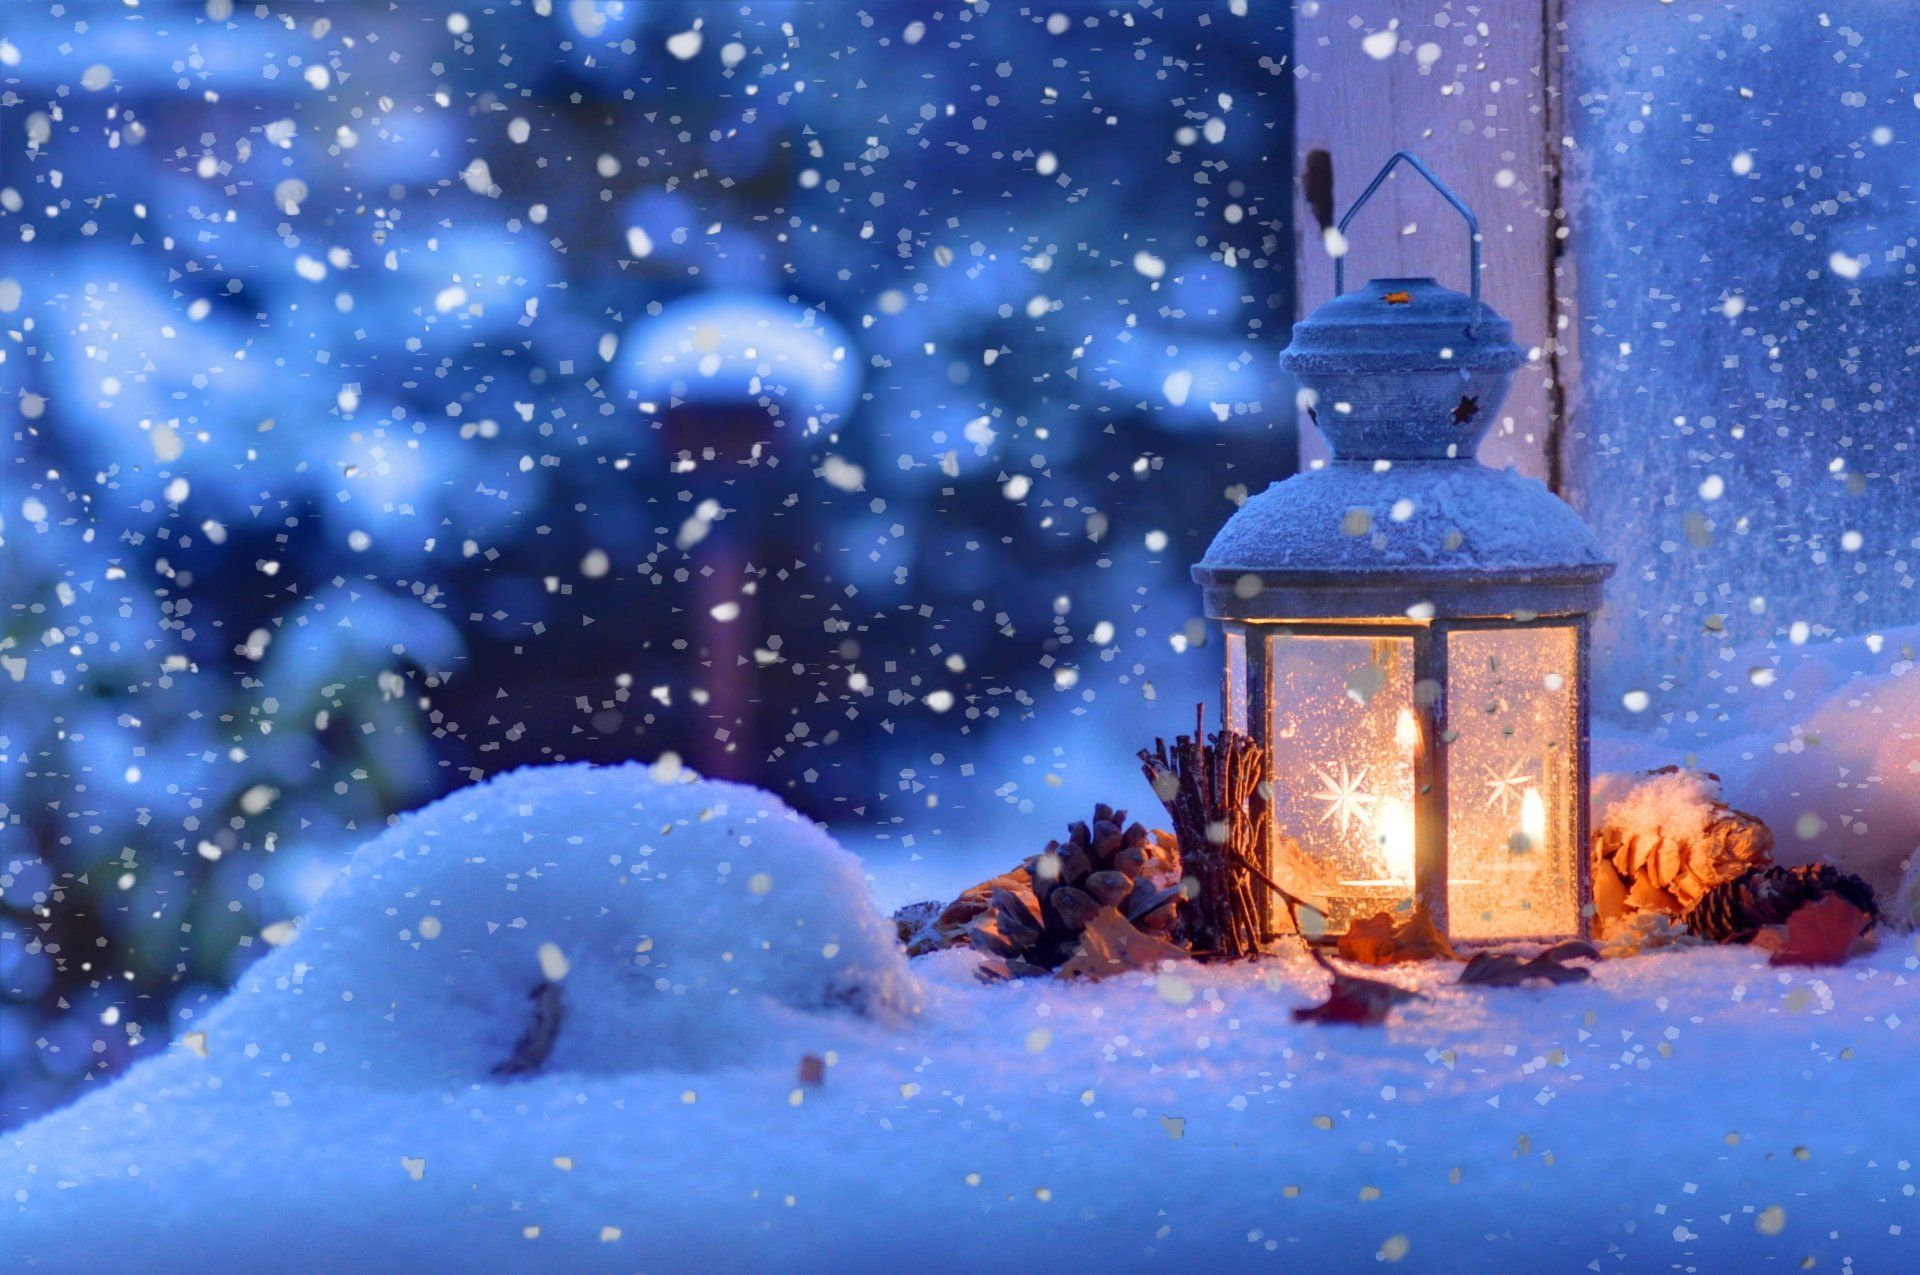 Một hình nền đèn lồng giáng sinh trong tuyết rơi sẽ giúp bạn thưởng thức mùa lễ hội đặc biệt hơn. Cảm nhận sự thần tiên khi những chiếc đèn lồng giáng sinh tỏa sáng trong khung cảnh tuyết trắng, mang đến niềm vui và đầy sự trân trọng cho mùa giáng sinh.